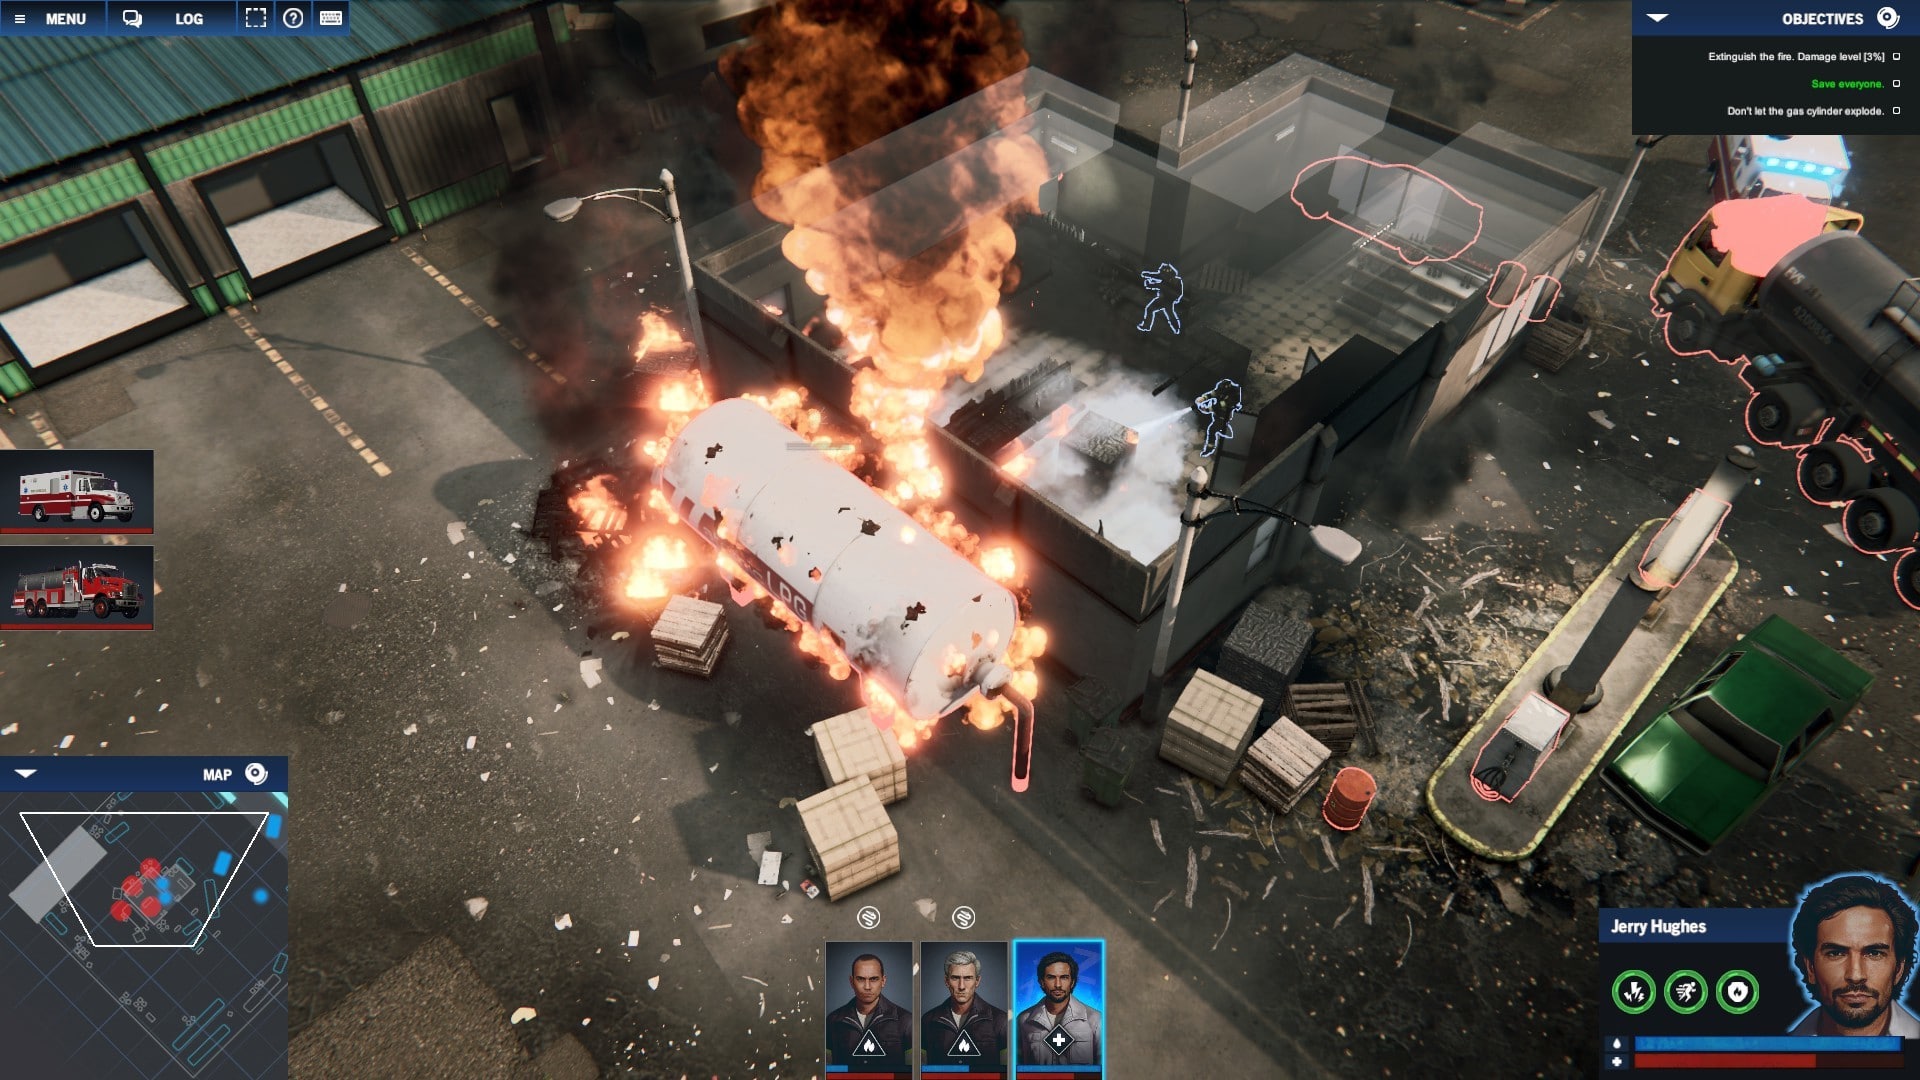 Fire Chief: First Response debuteert op Steam met de gratis intro